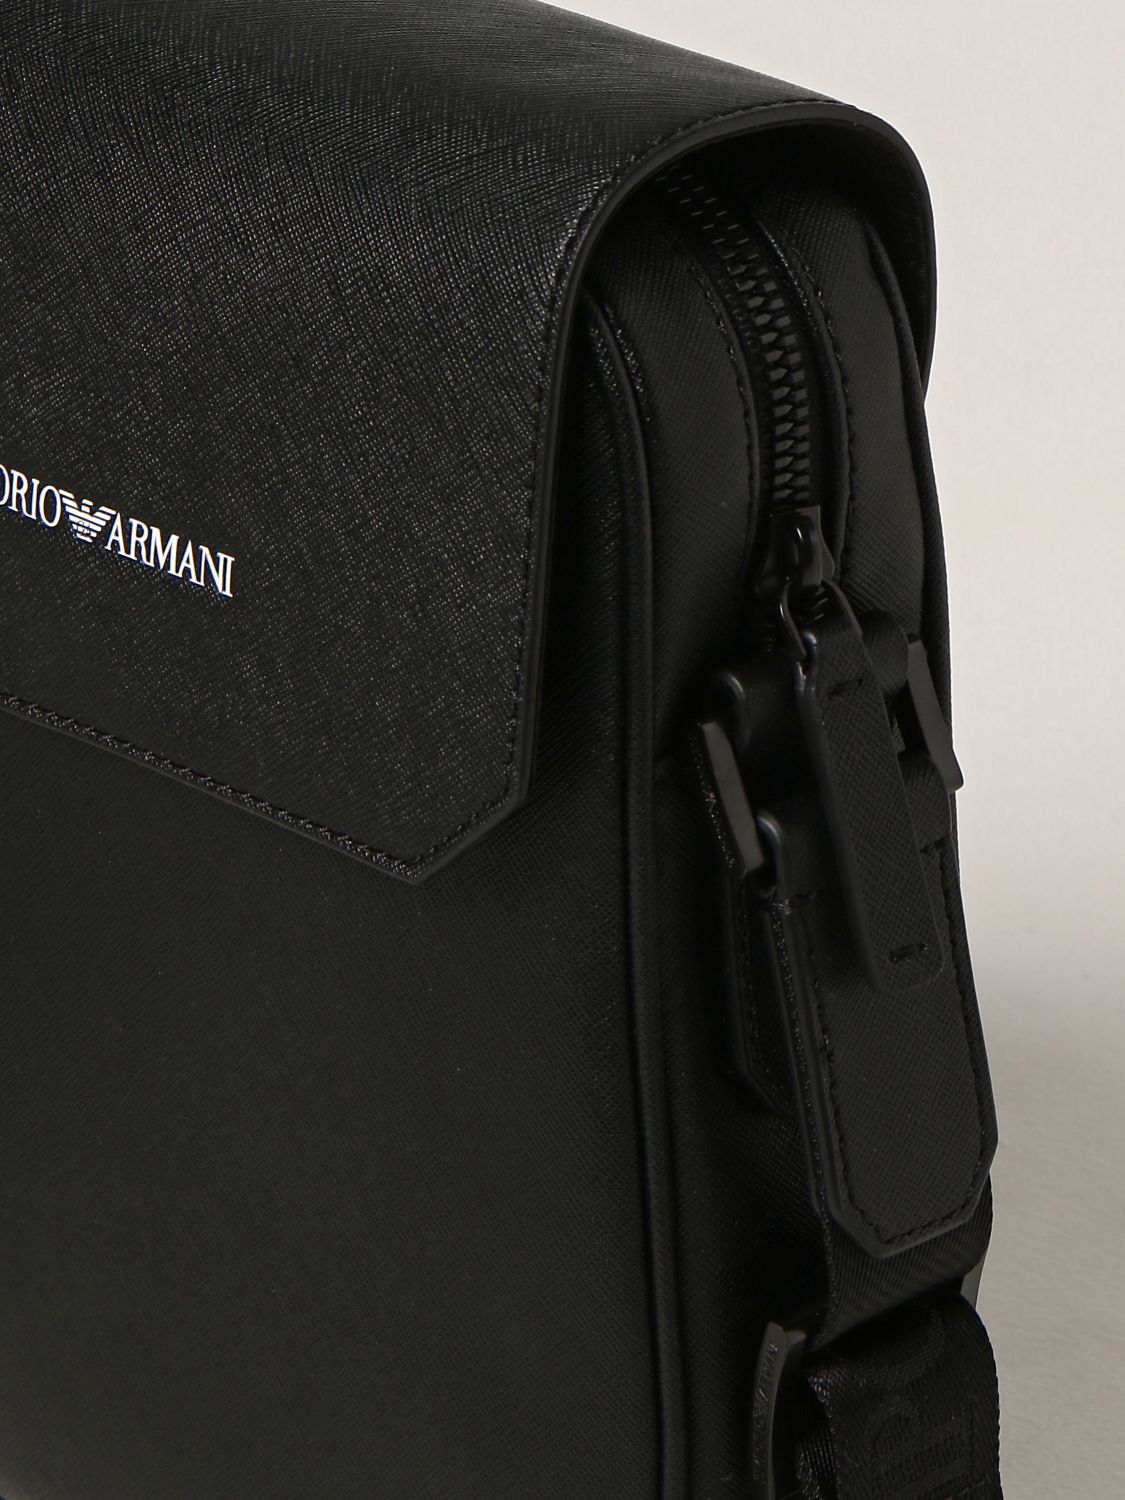 EMPORIO ARMANI: Messenger bag in regenerated leather - Black  Emporio  Armani shoulder bag Y4M242Y020V online at